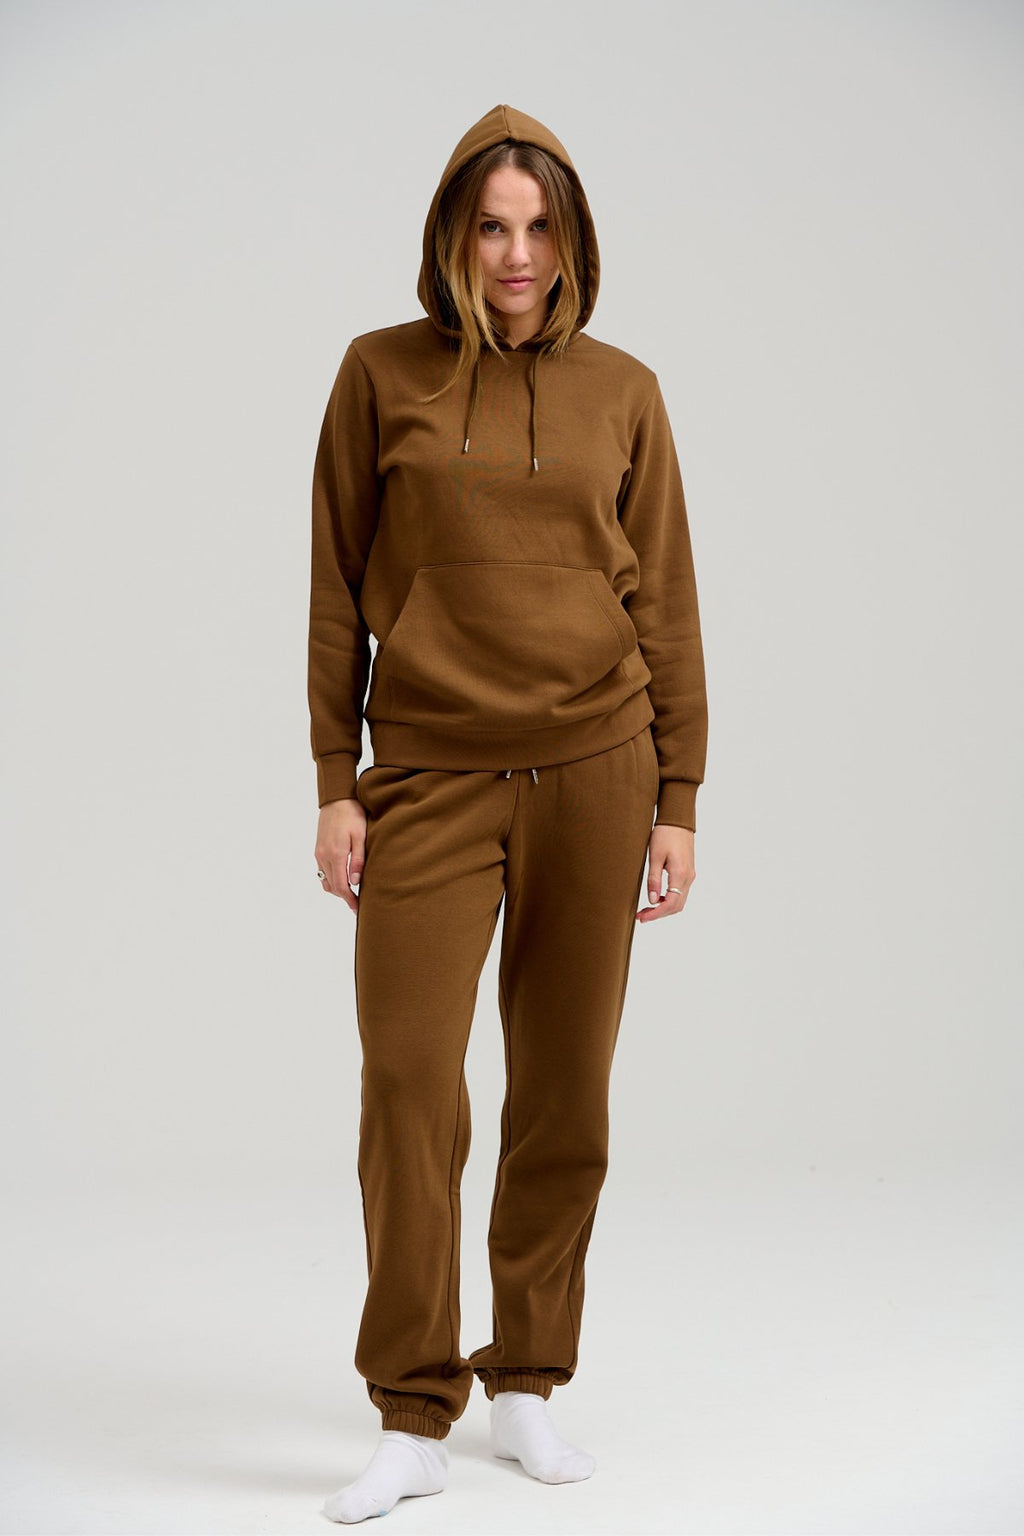 Basic Sweatsuit met hoodie (bruin) - pakketdeal (vrouwen)